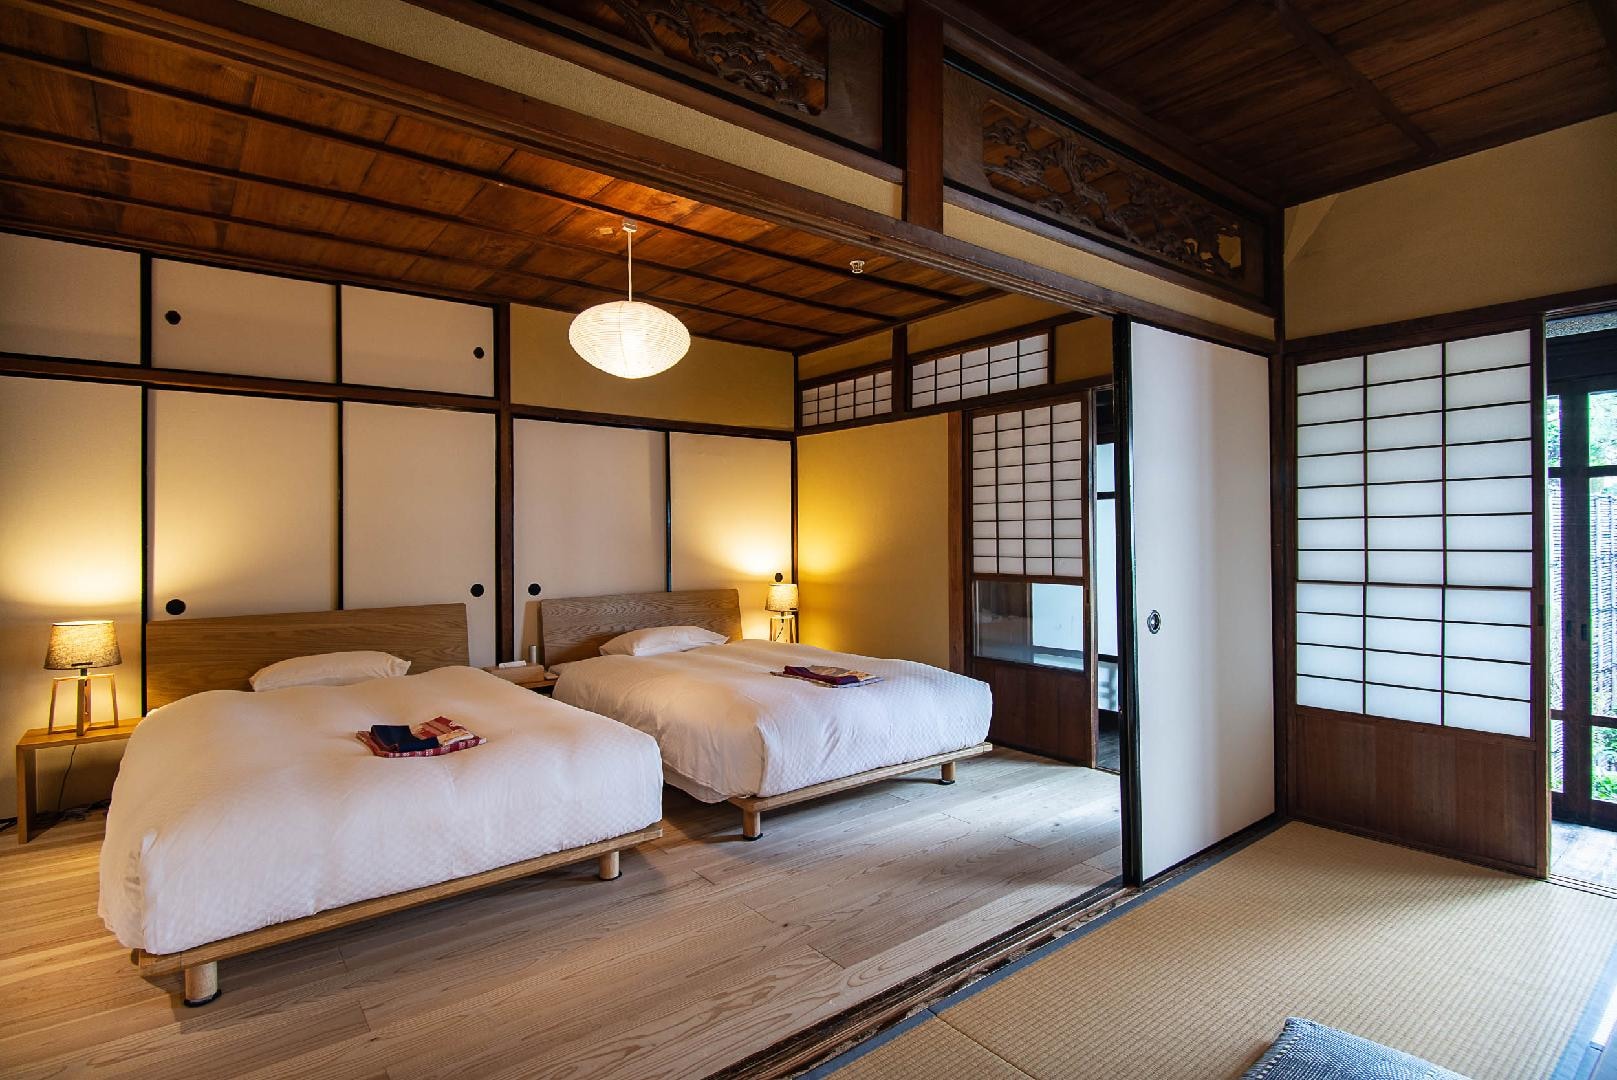 【VMG Premier】日式房间铺着木地板的榻榻米房间。你可以从阳台上看到街道。